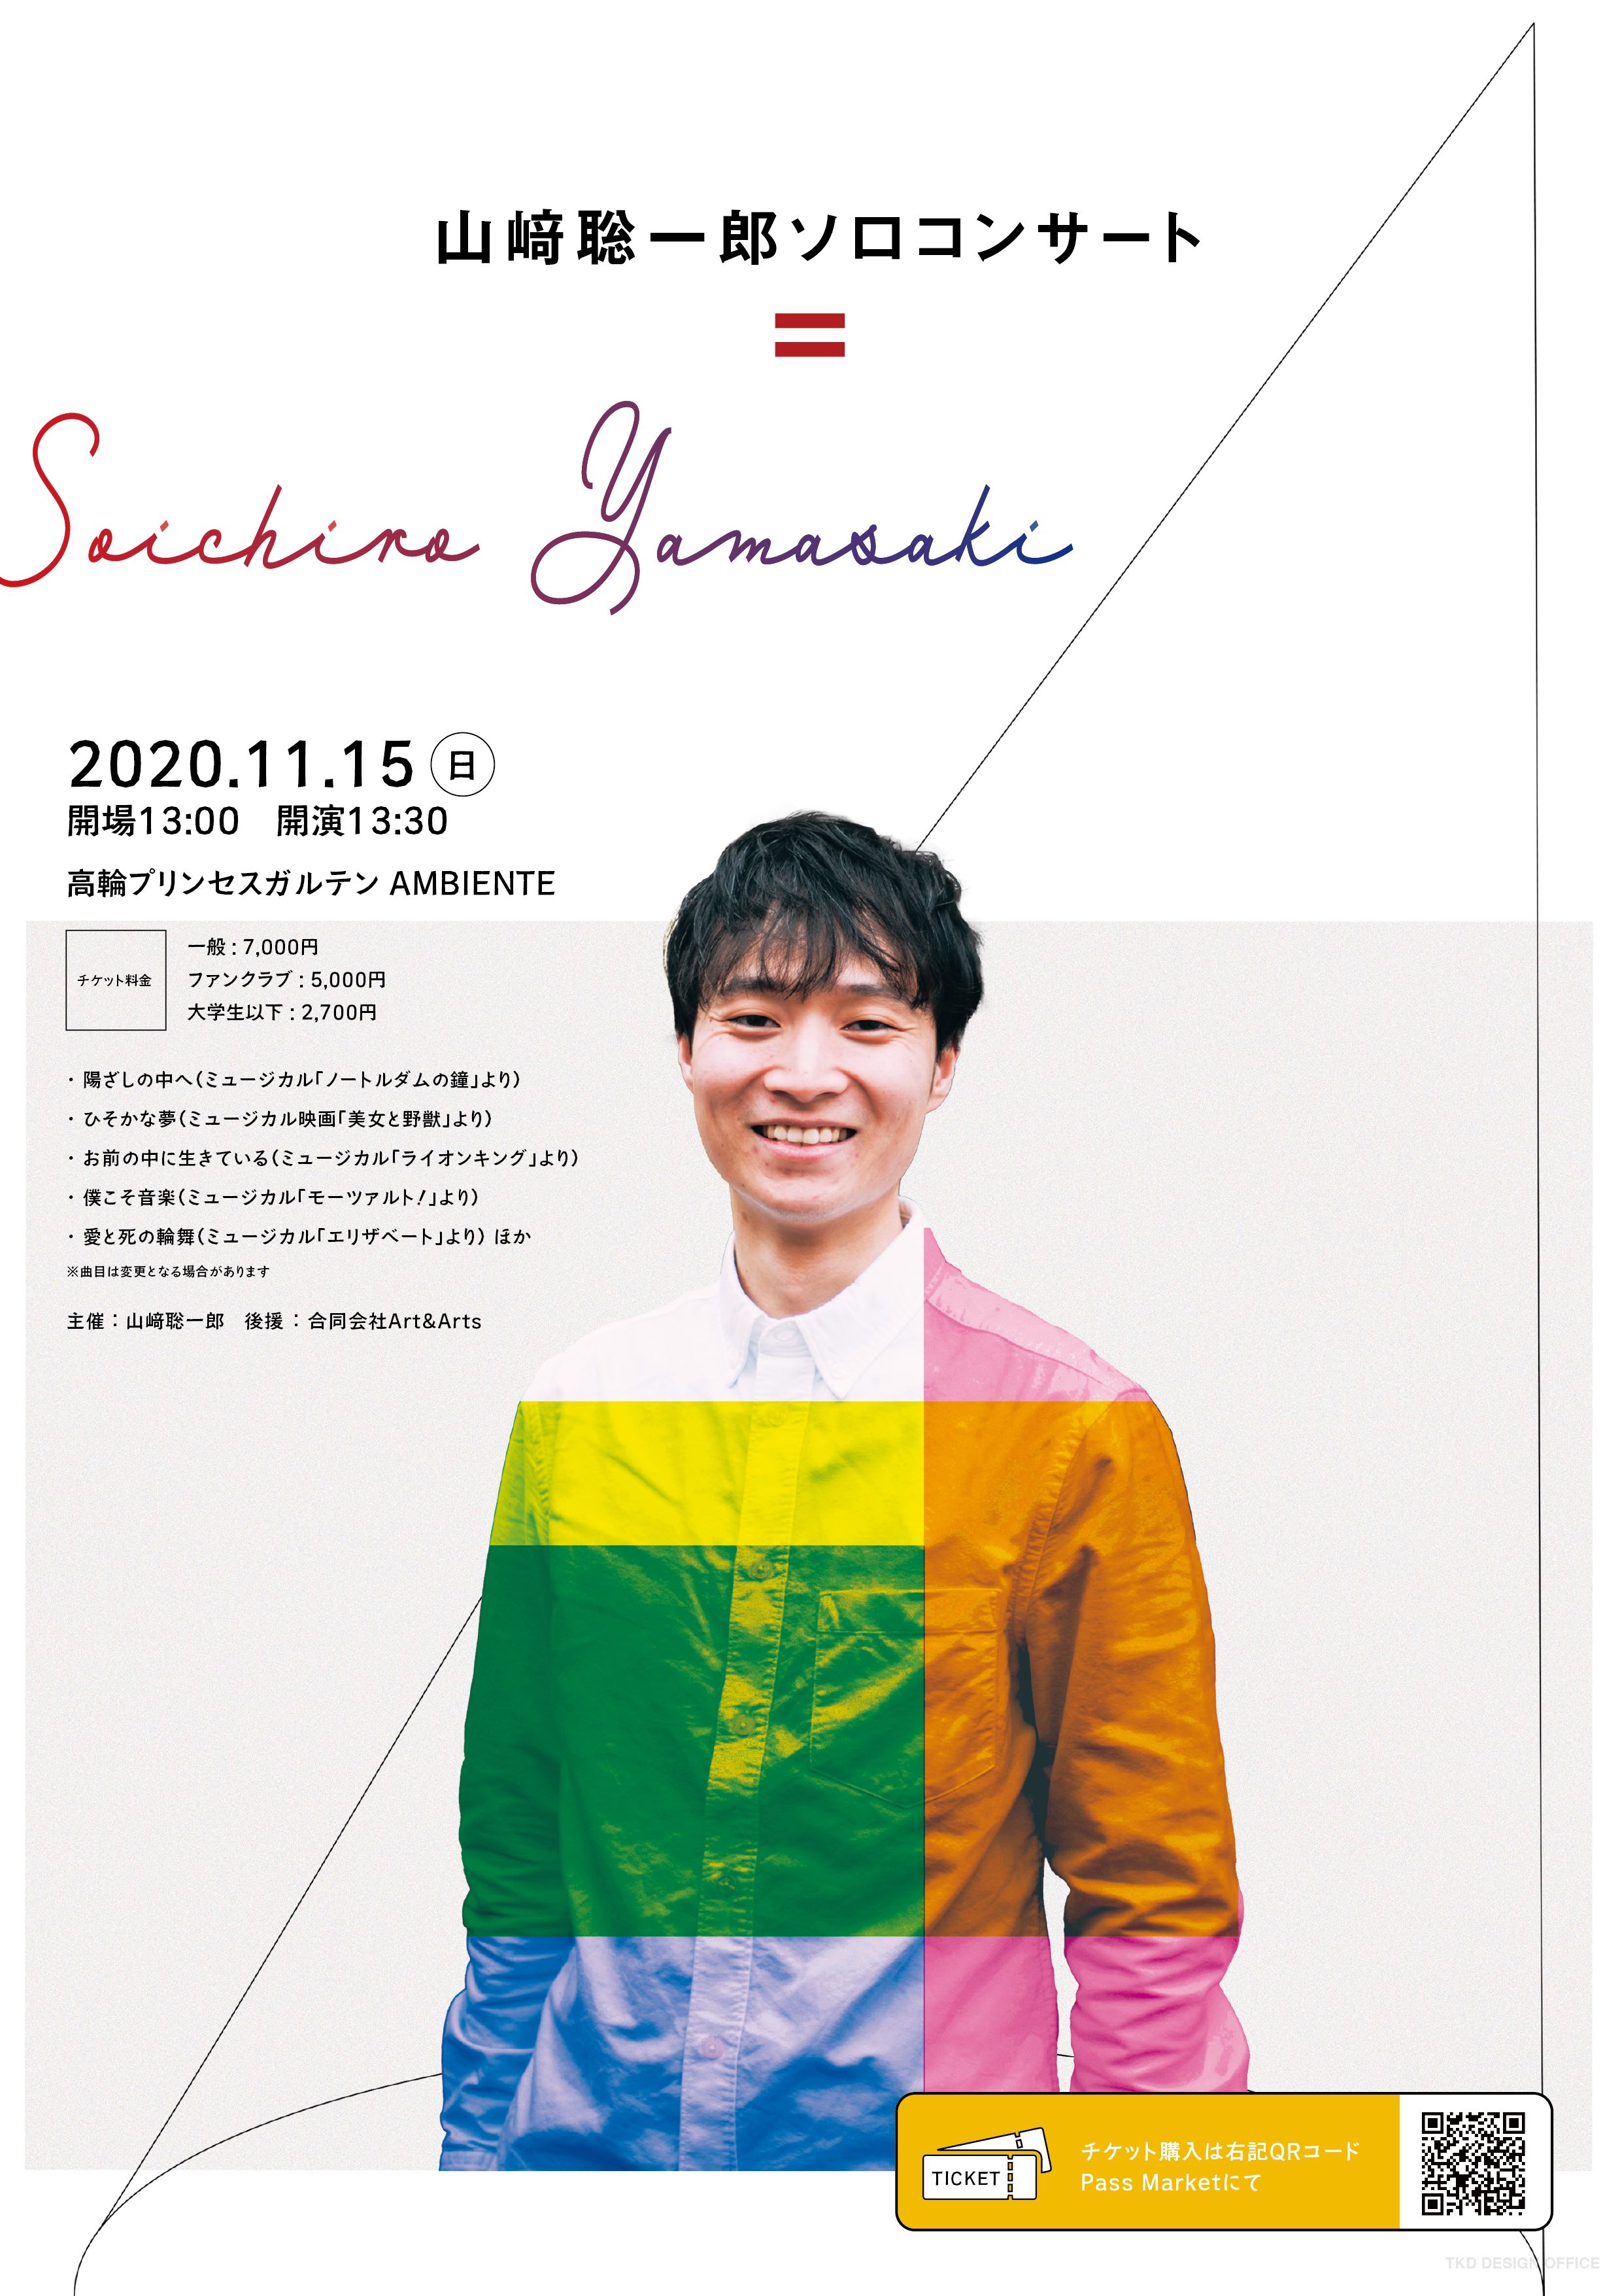 山崎聡一郎ソロコンサート を開催します 合同会社art Artsのプレスリリース